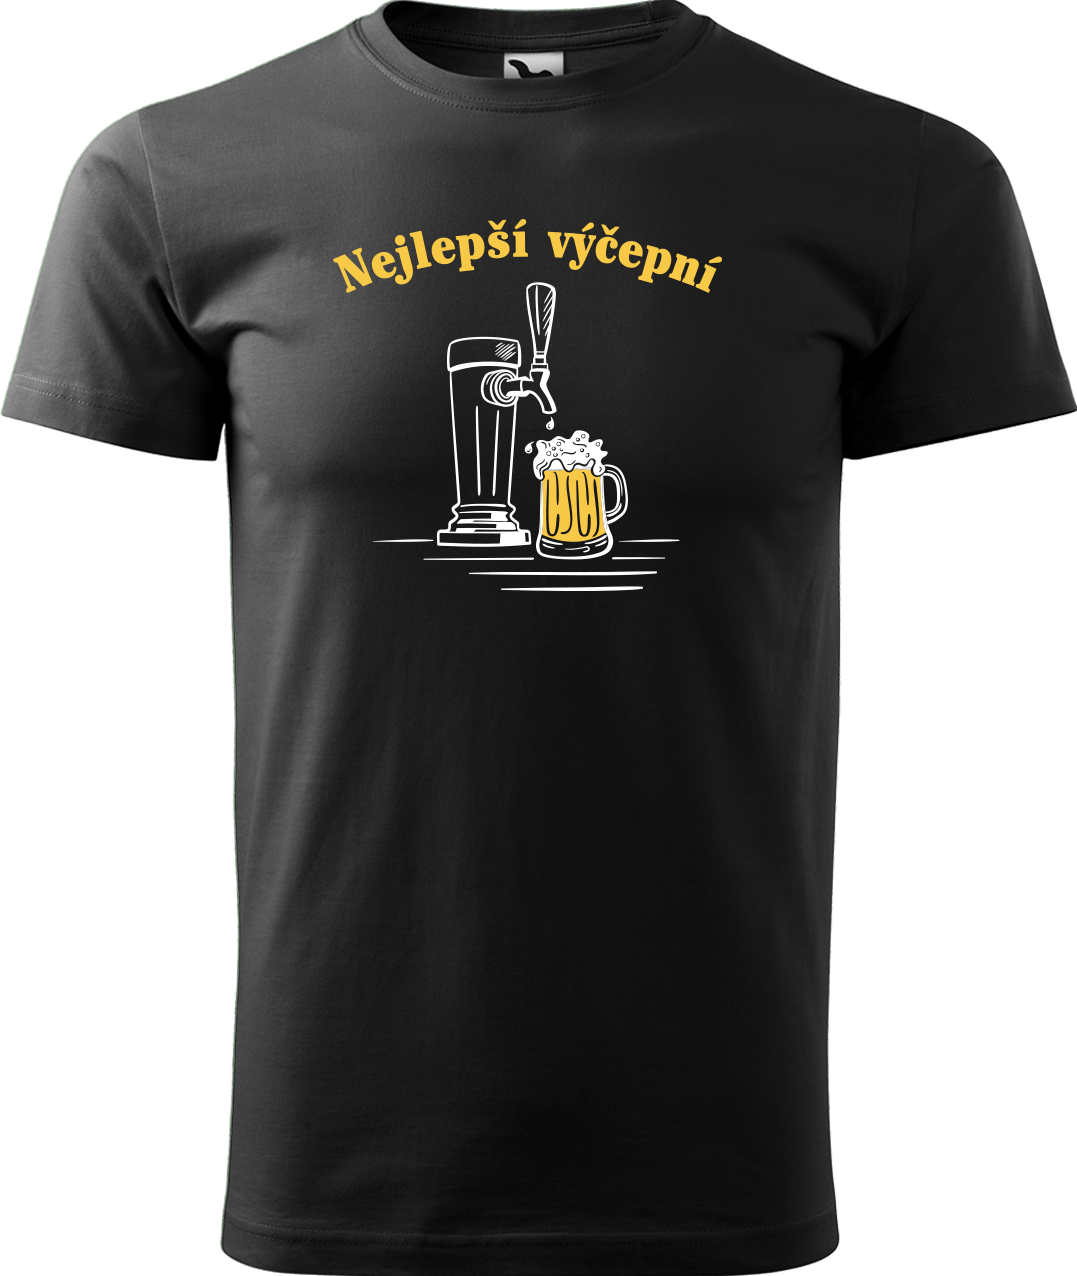 Pivní tričko - Nejlepší výčepní Velikost: S, Barva: Černá (01)